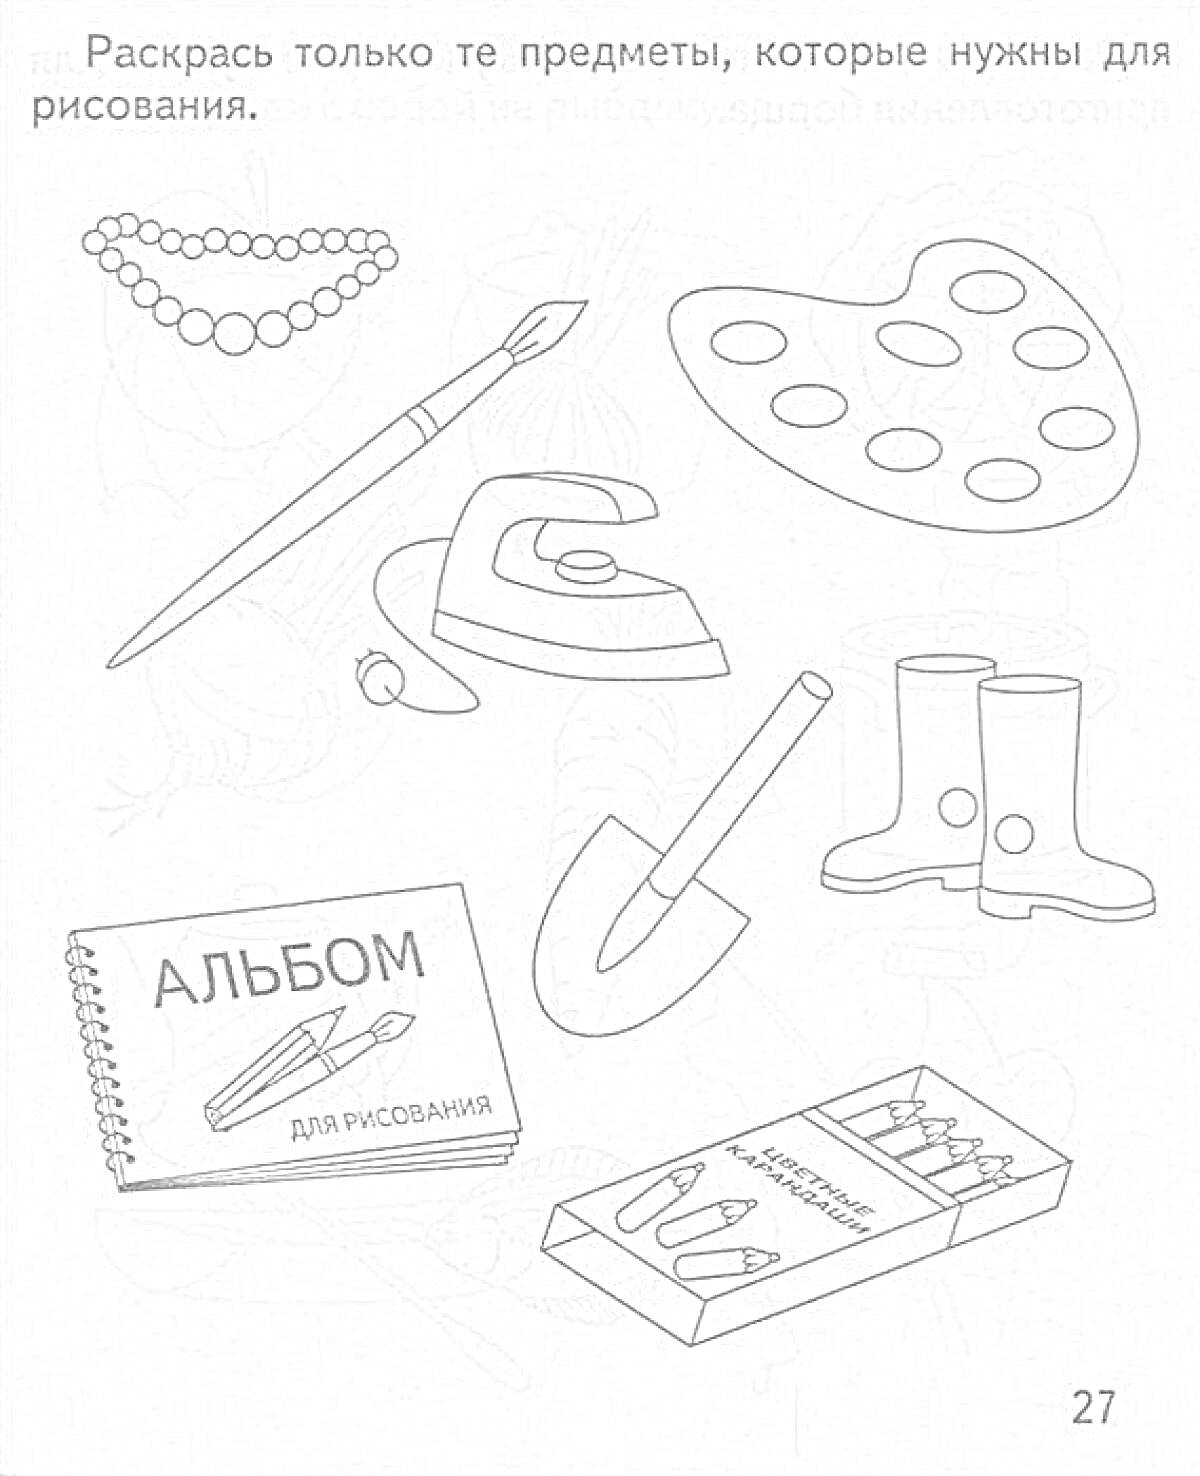 Набор предметов - бусы, кисточка, палитра, утюг, сапоги, альбом для рисования, лопата, коробка карандашей